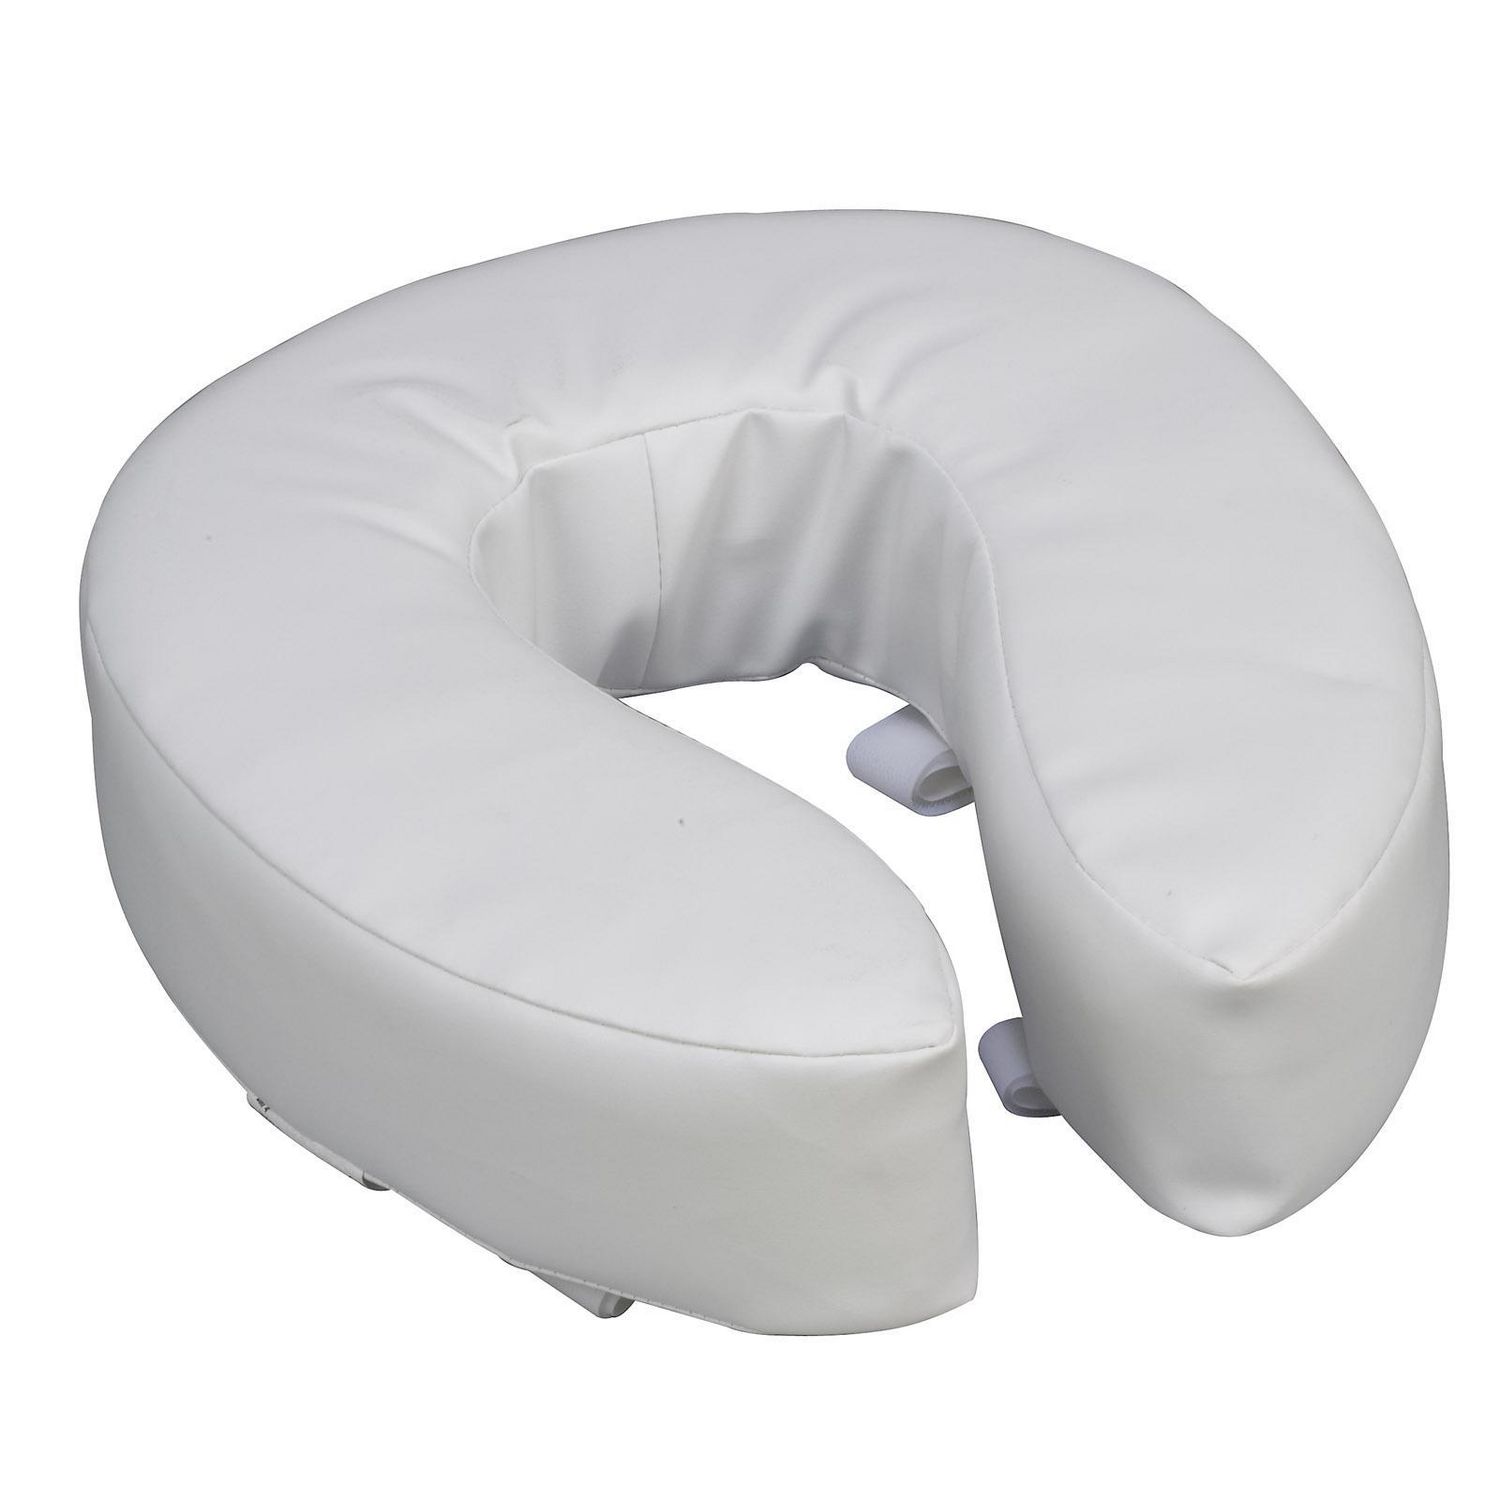 DMI Vinyl Foam Toilet Seat Cushion Adds Extra Padding to Your Toilet